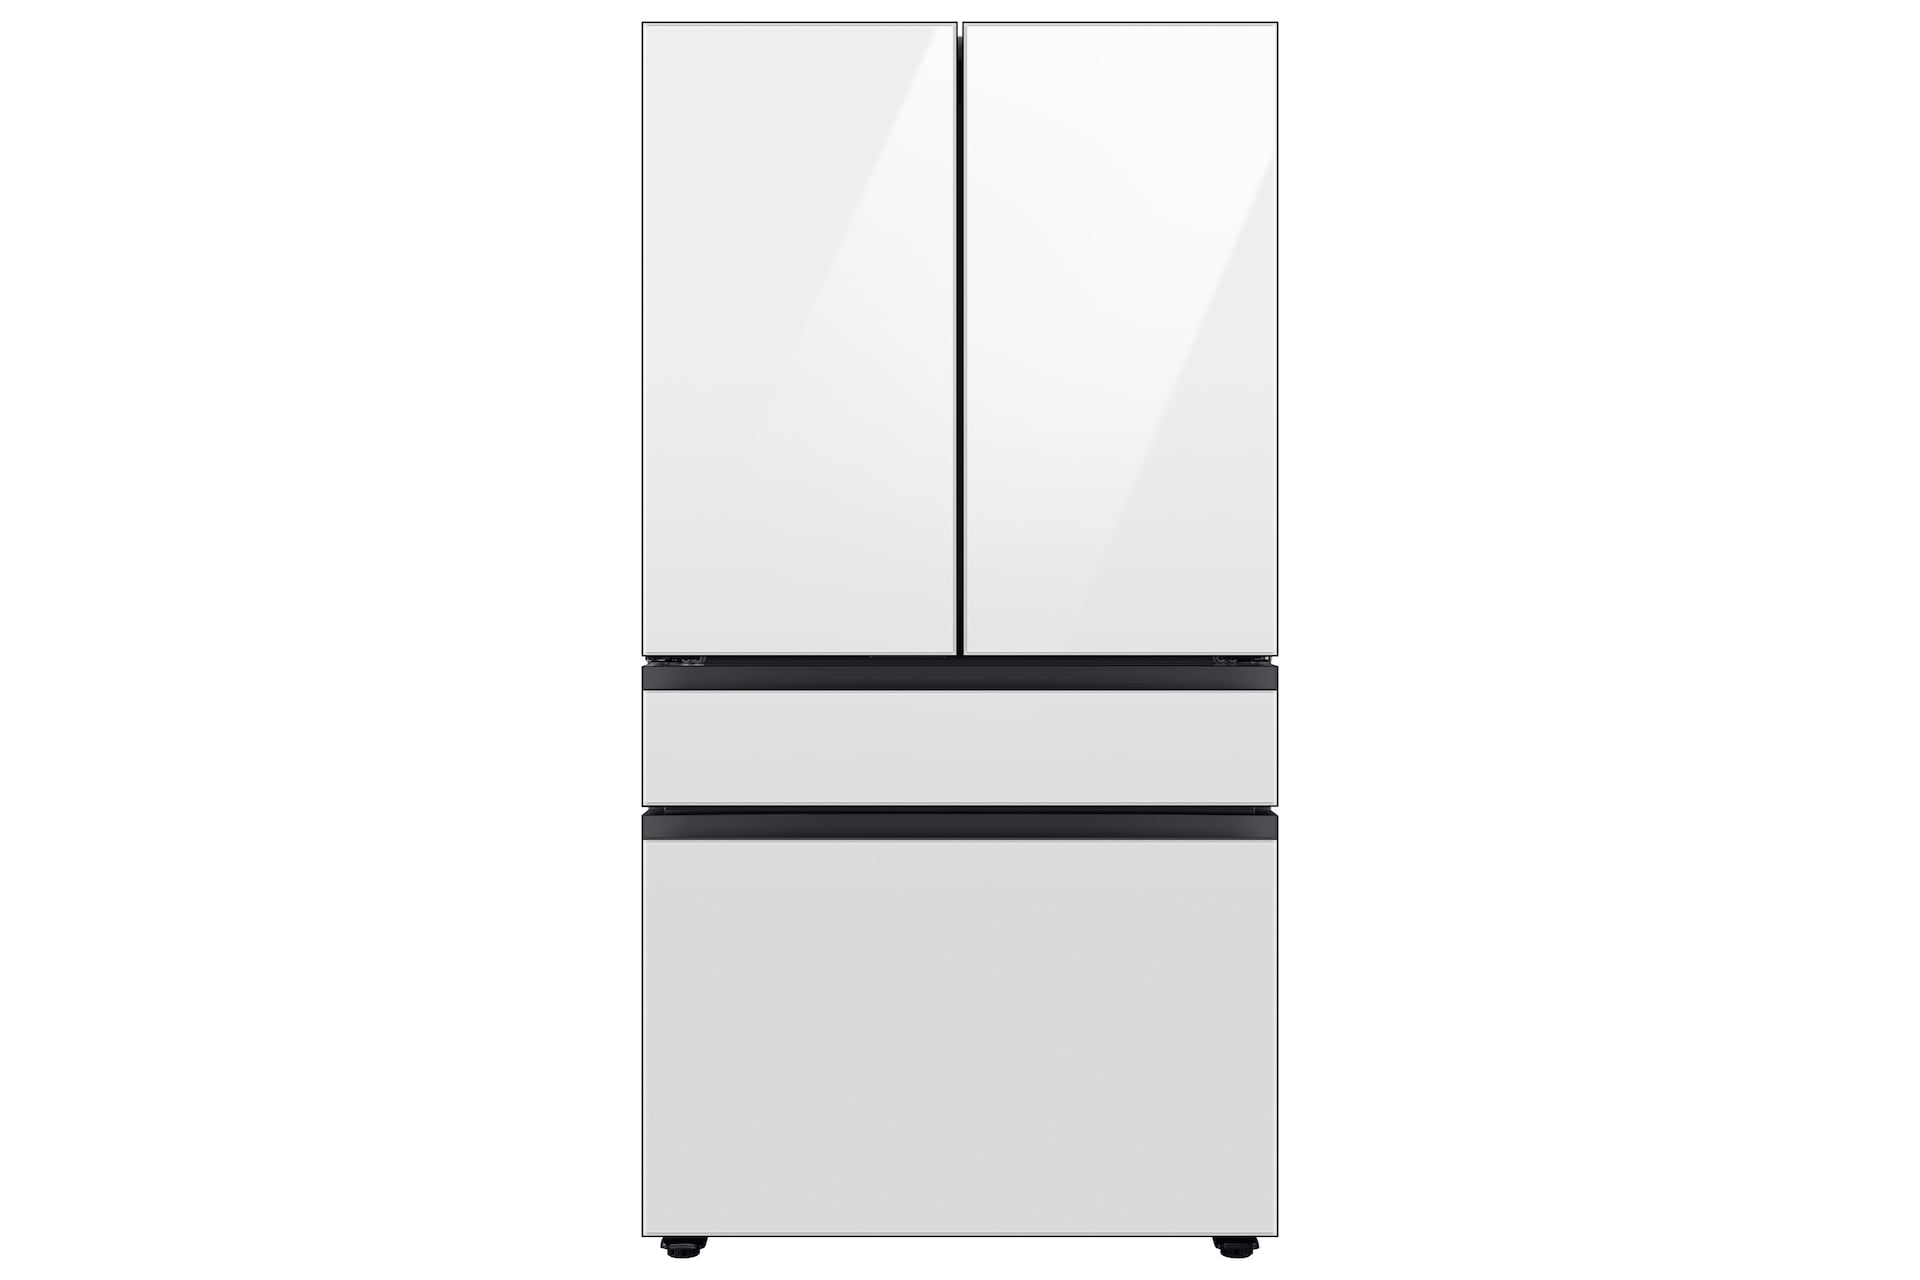 Image of Samsung 36  BESPOKE 4-Door French Door Counter Depth Refrigerator with Beverage Center